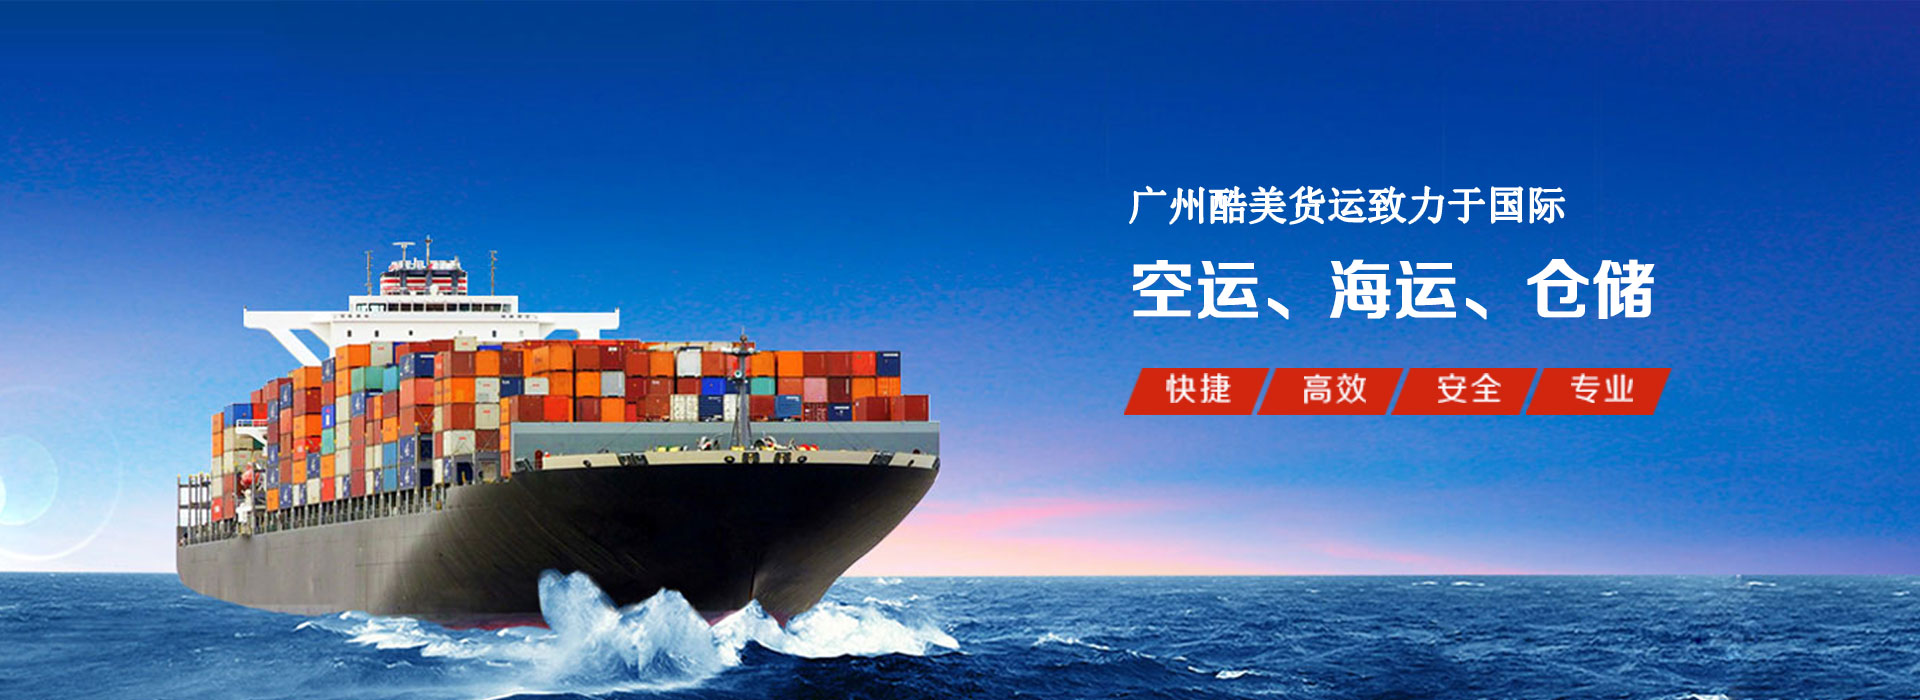 广州酷美货运致力于国际海运、空运、仓储等服务